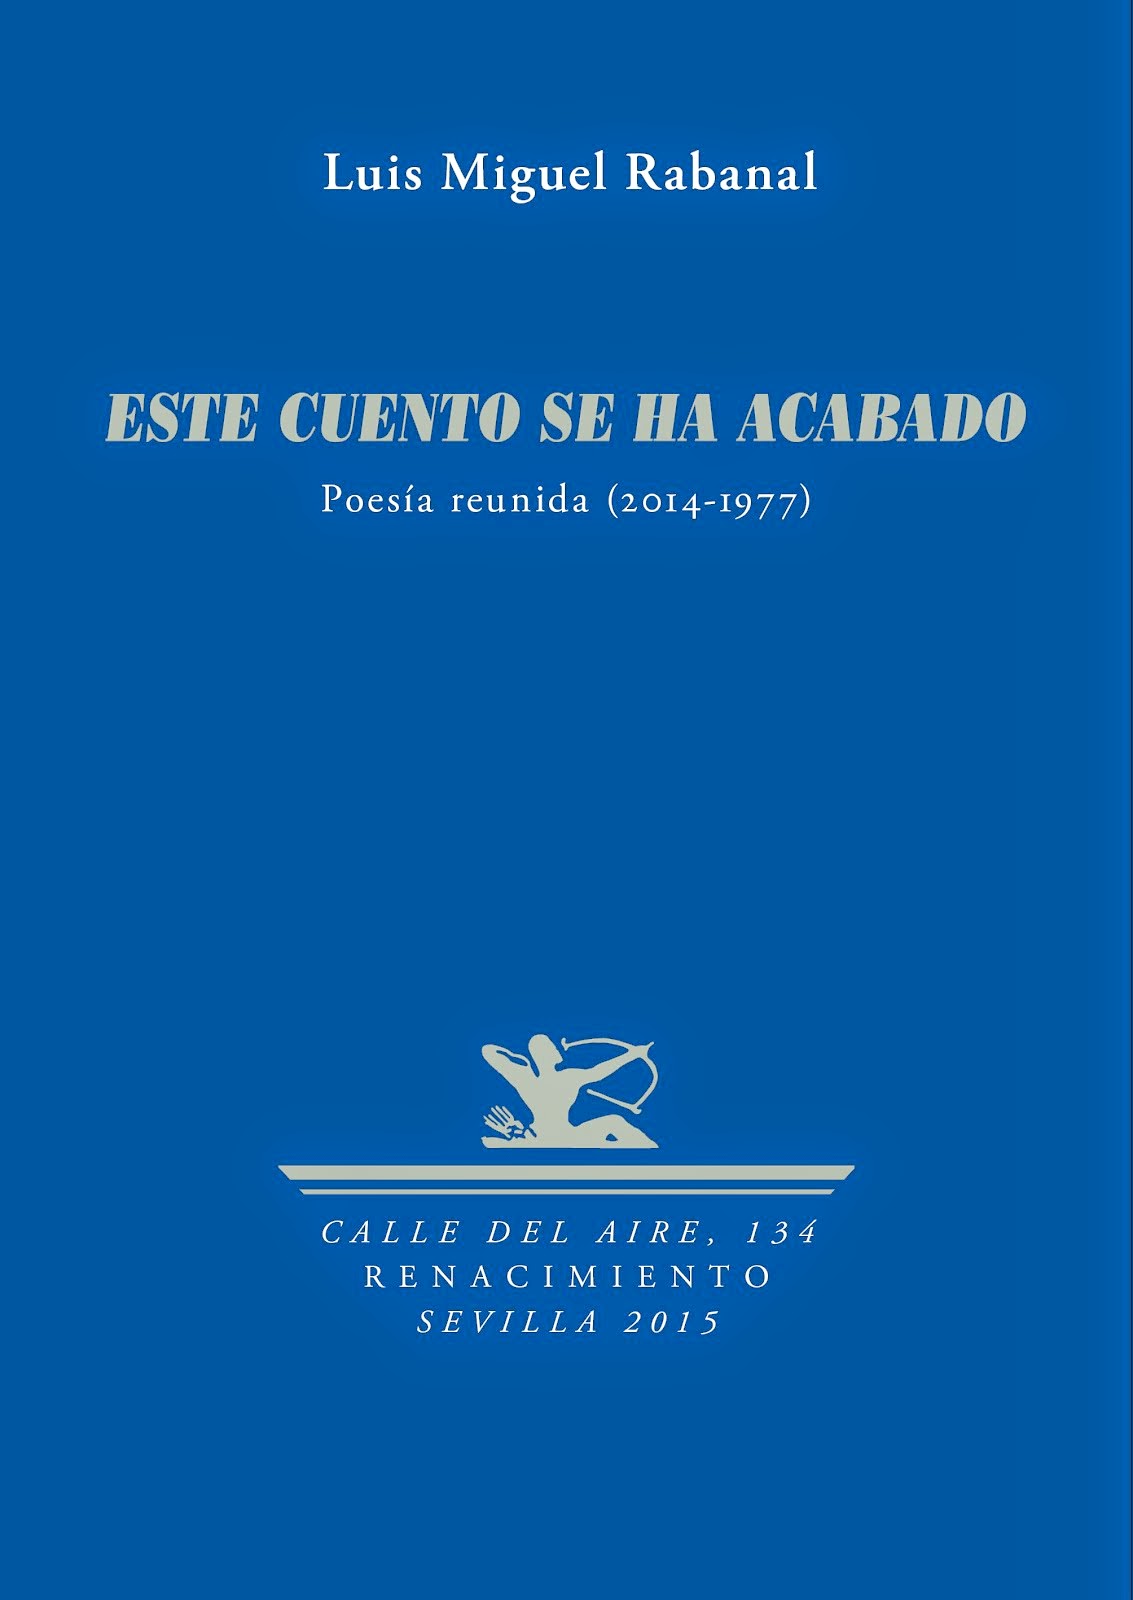 ESTE CUENTO SE HA ACABADO (Poesía reunida 2014-1977) / LUIS MIGUEL RABANAL